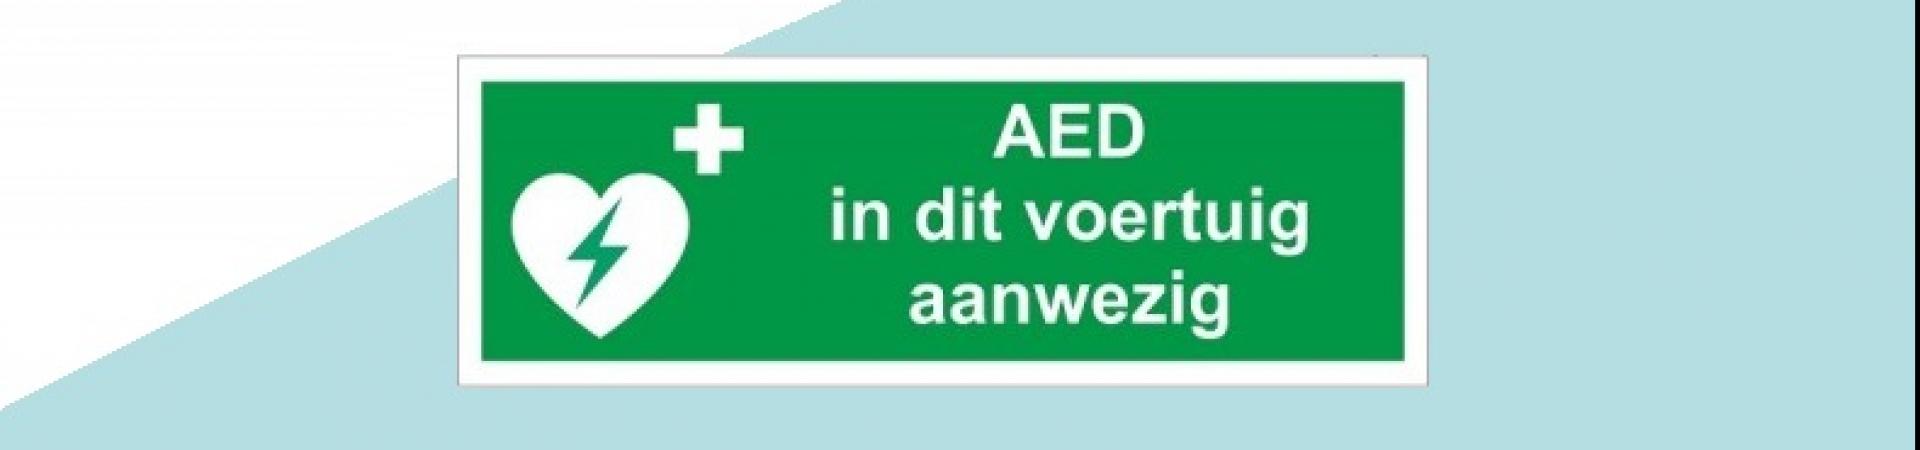 PRIMEUR Collectief Hillegersberg in Rotterdam heeft een AED